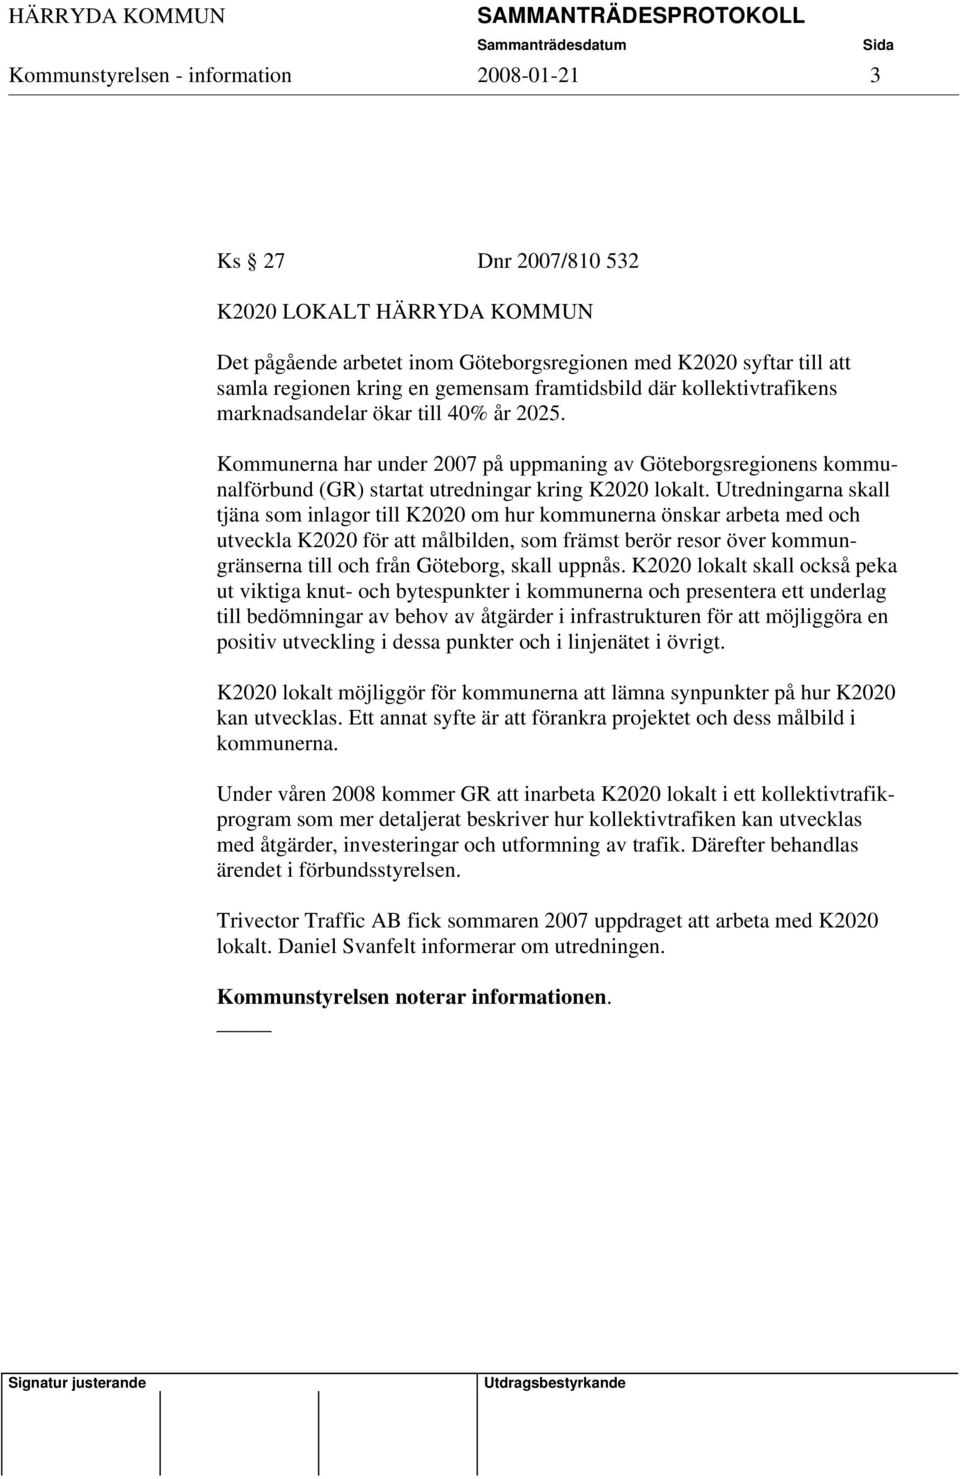 Utredningarna skall tjäna som inlagor till K2020 om hur kommunerna önskar arbeta med och utveckla K2020 för att målbilden, som främst berör resor över kommungränserna till och från Göteborg, skall